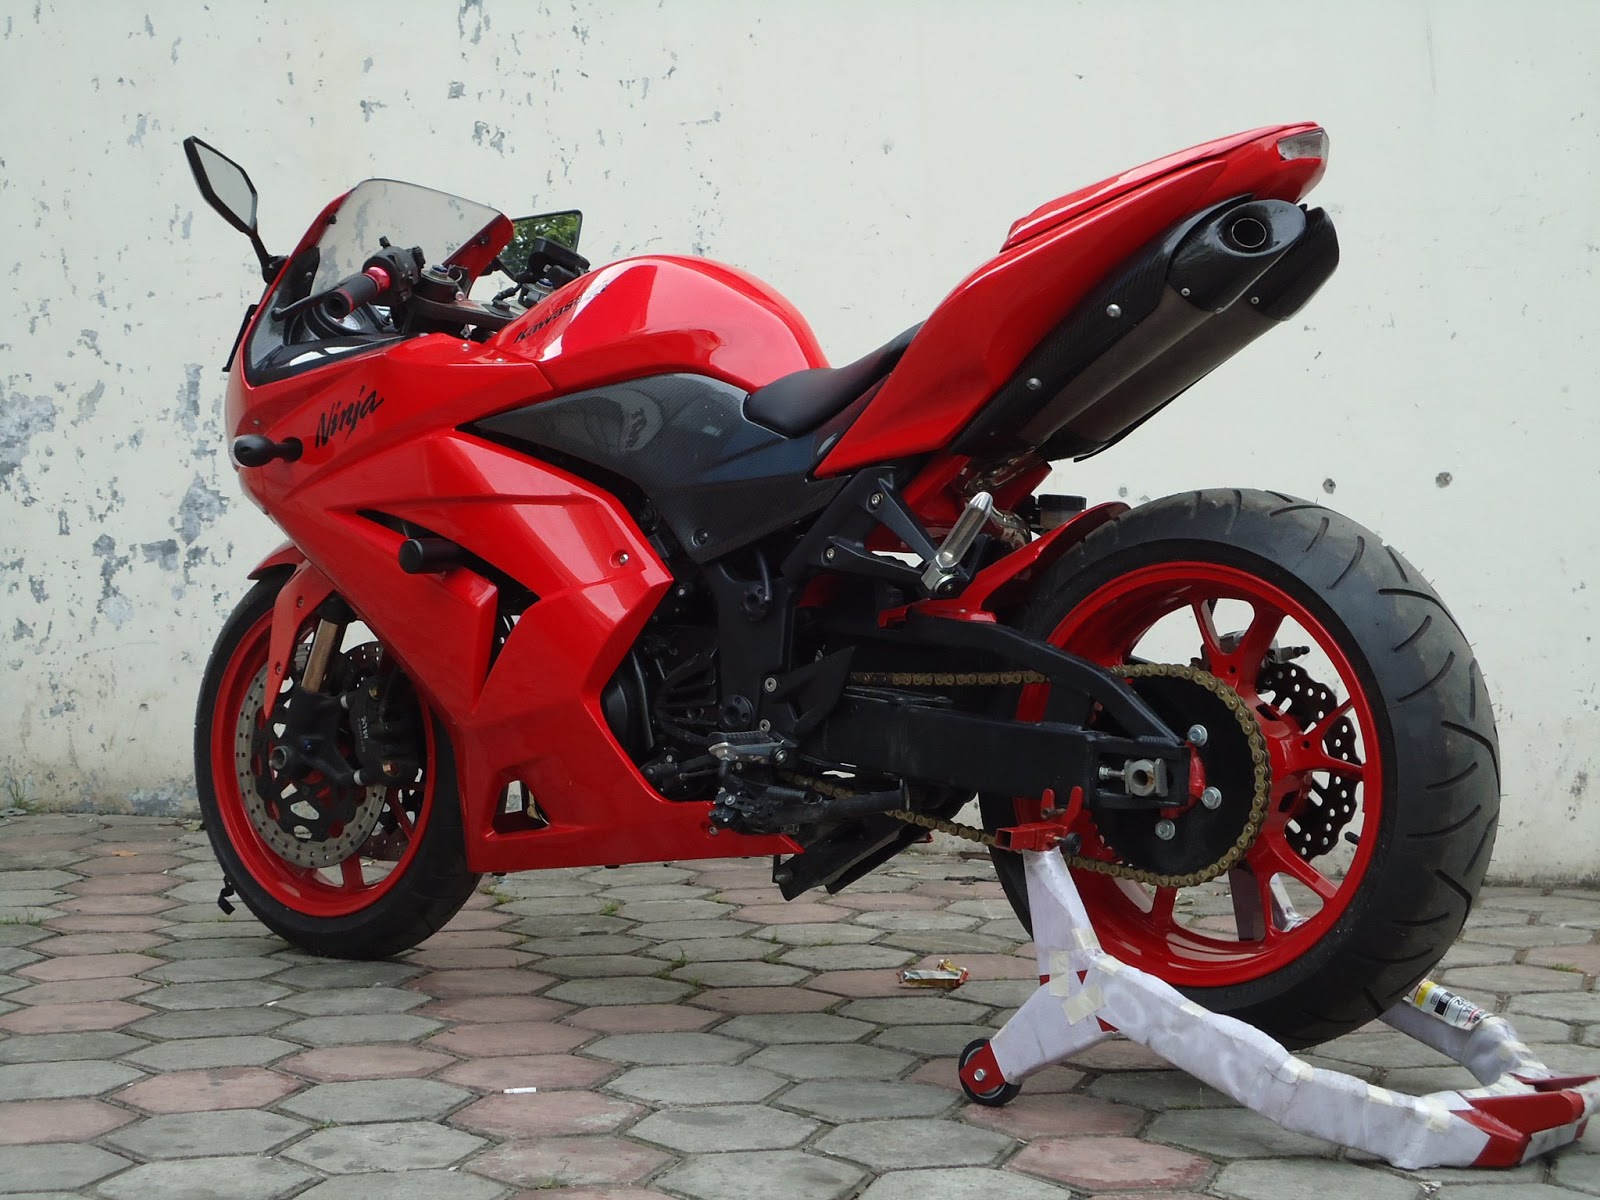 Foto Modifikasi Motor Ninja 250 Merah Terbaru 2015